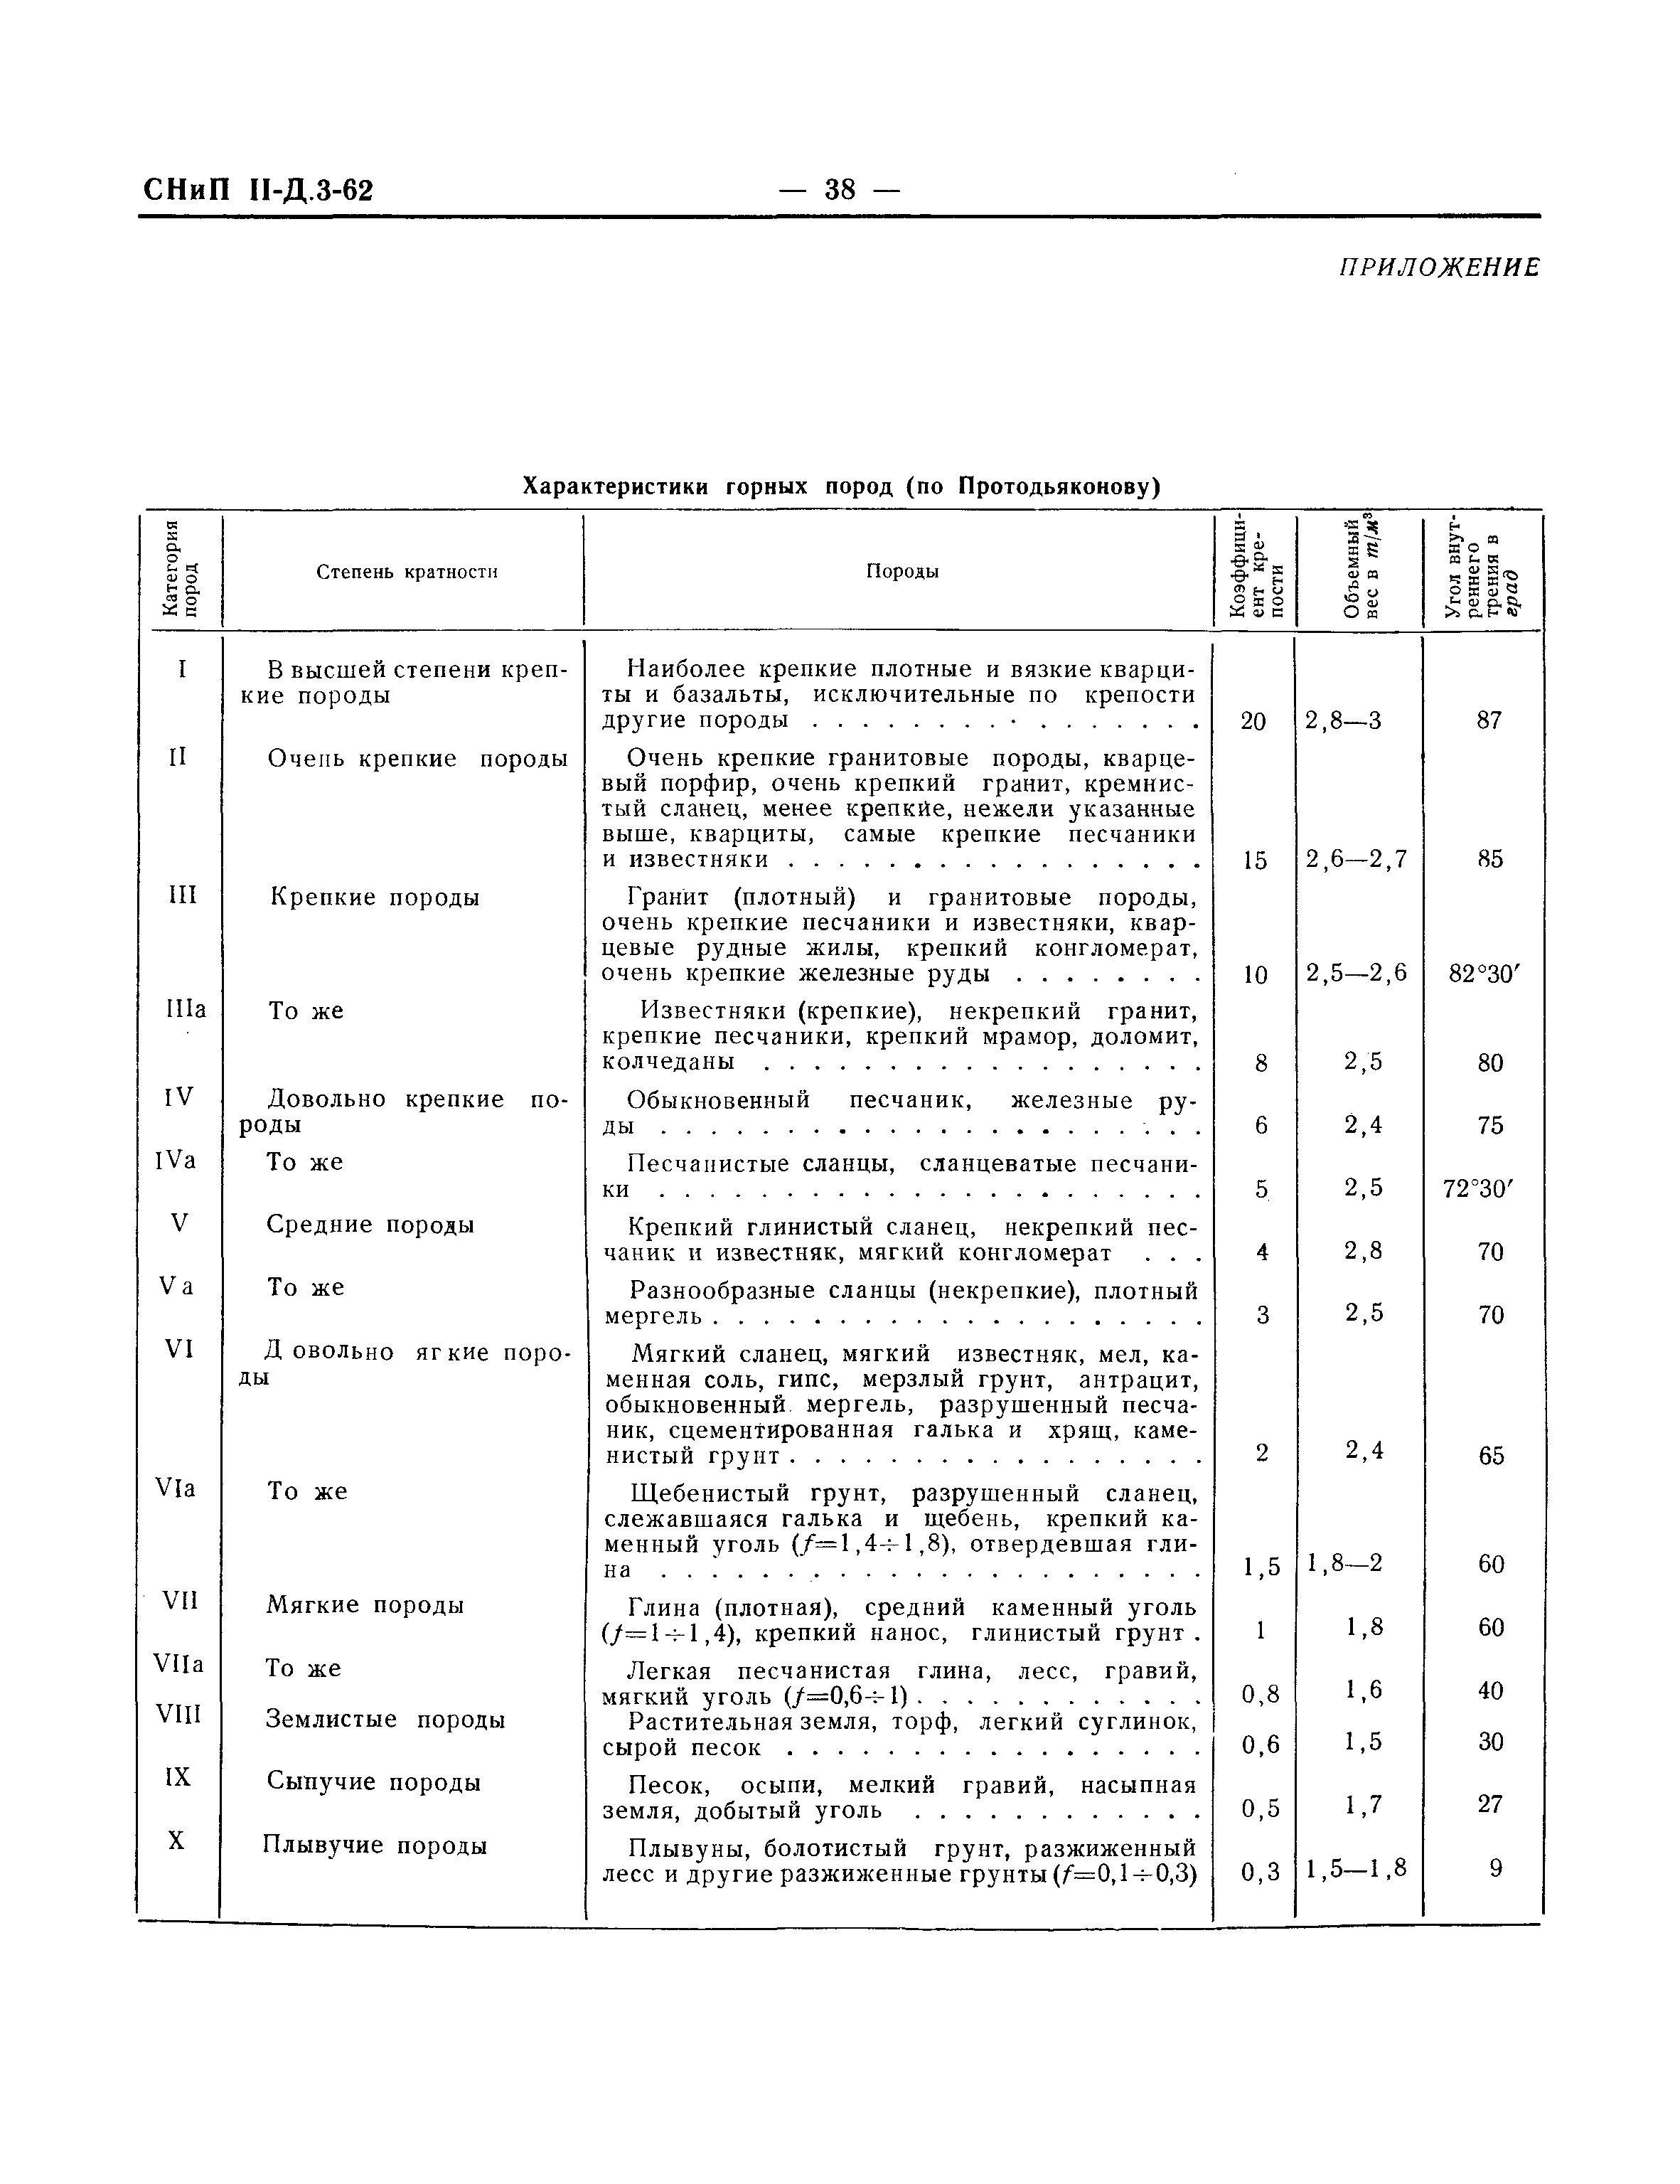 СНиП II-Д.3-62